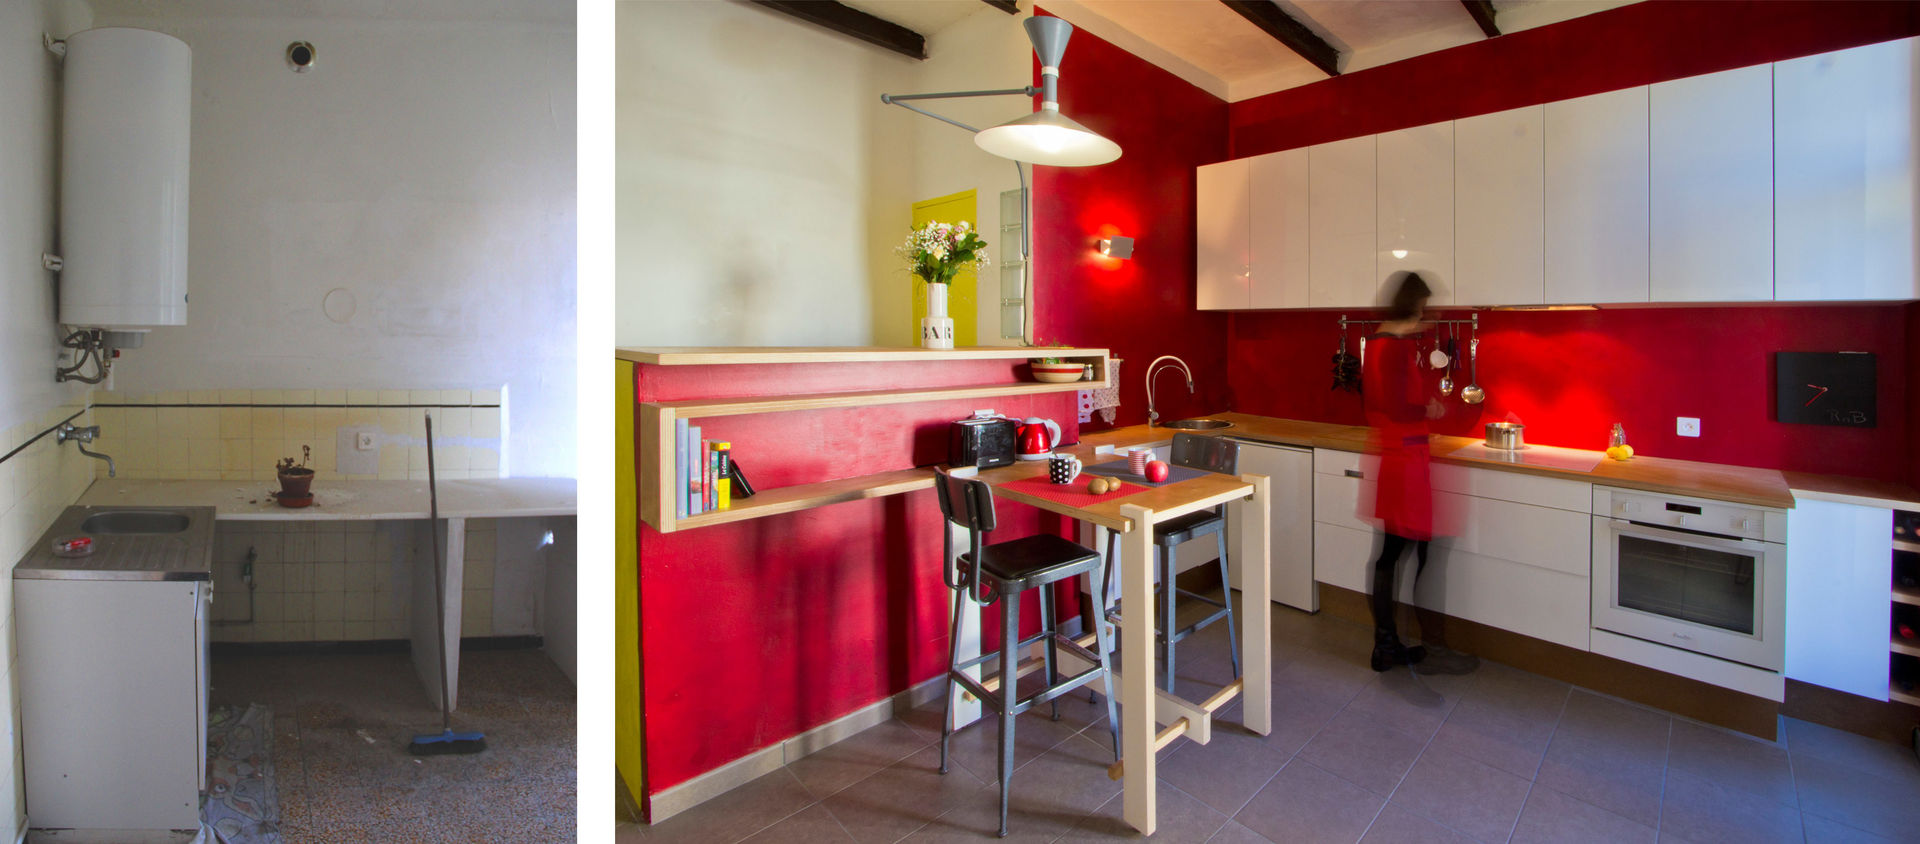 Rénovation d'un appartement à Ajaccio « Grand volume pour petite surface, un mini- loft tout citadin », Atelier RnB Atelier RnB